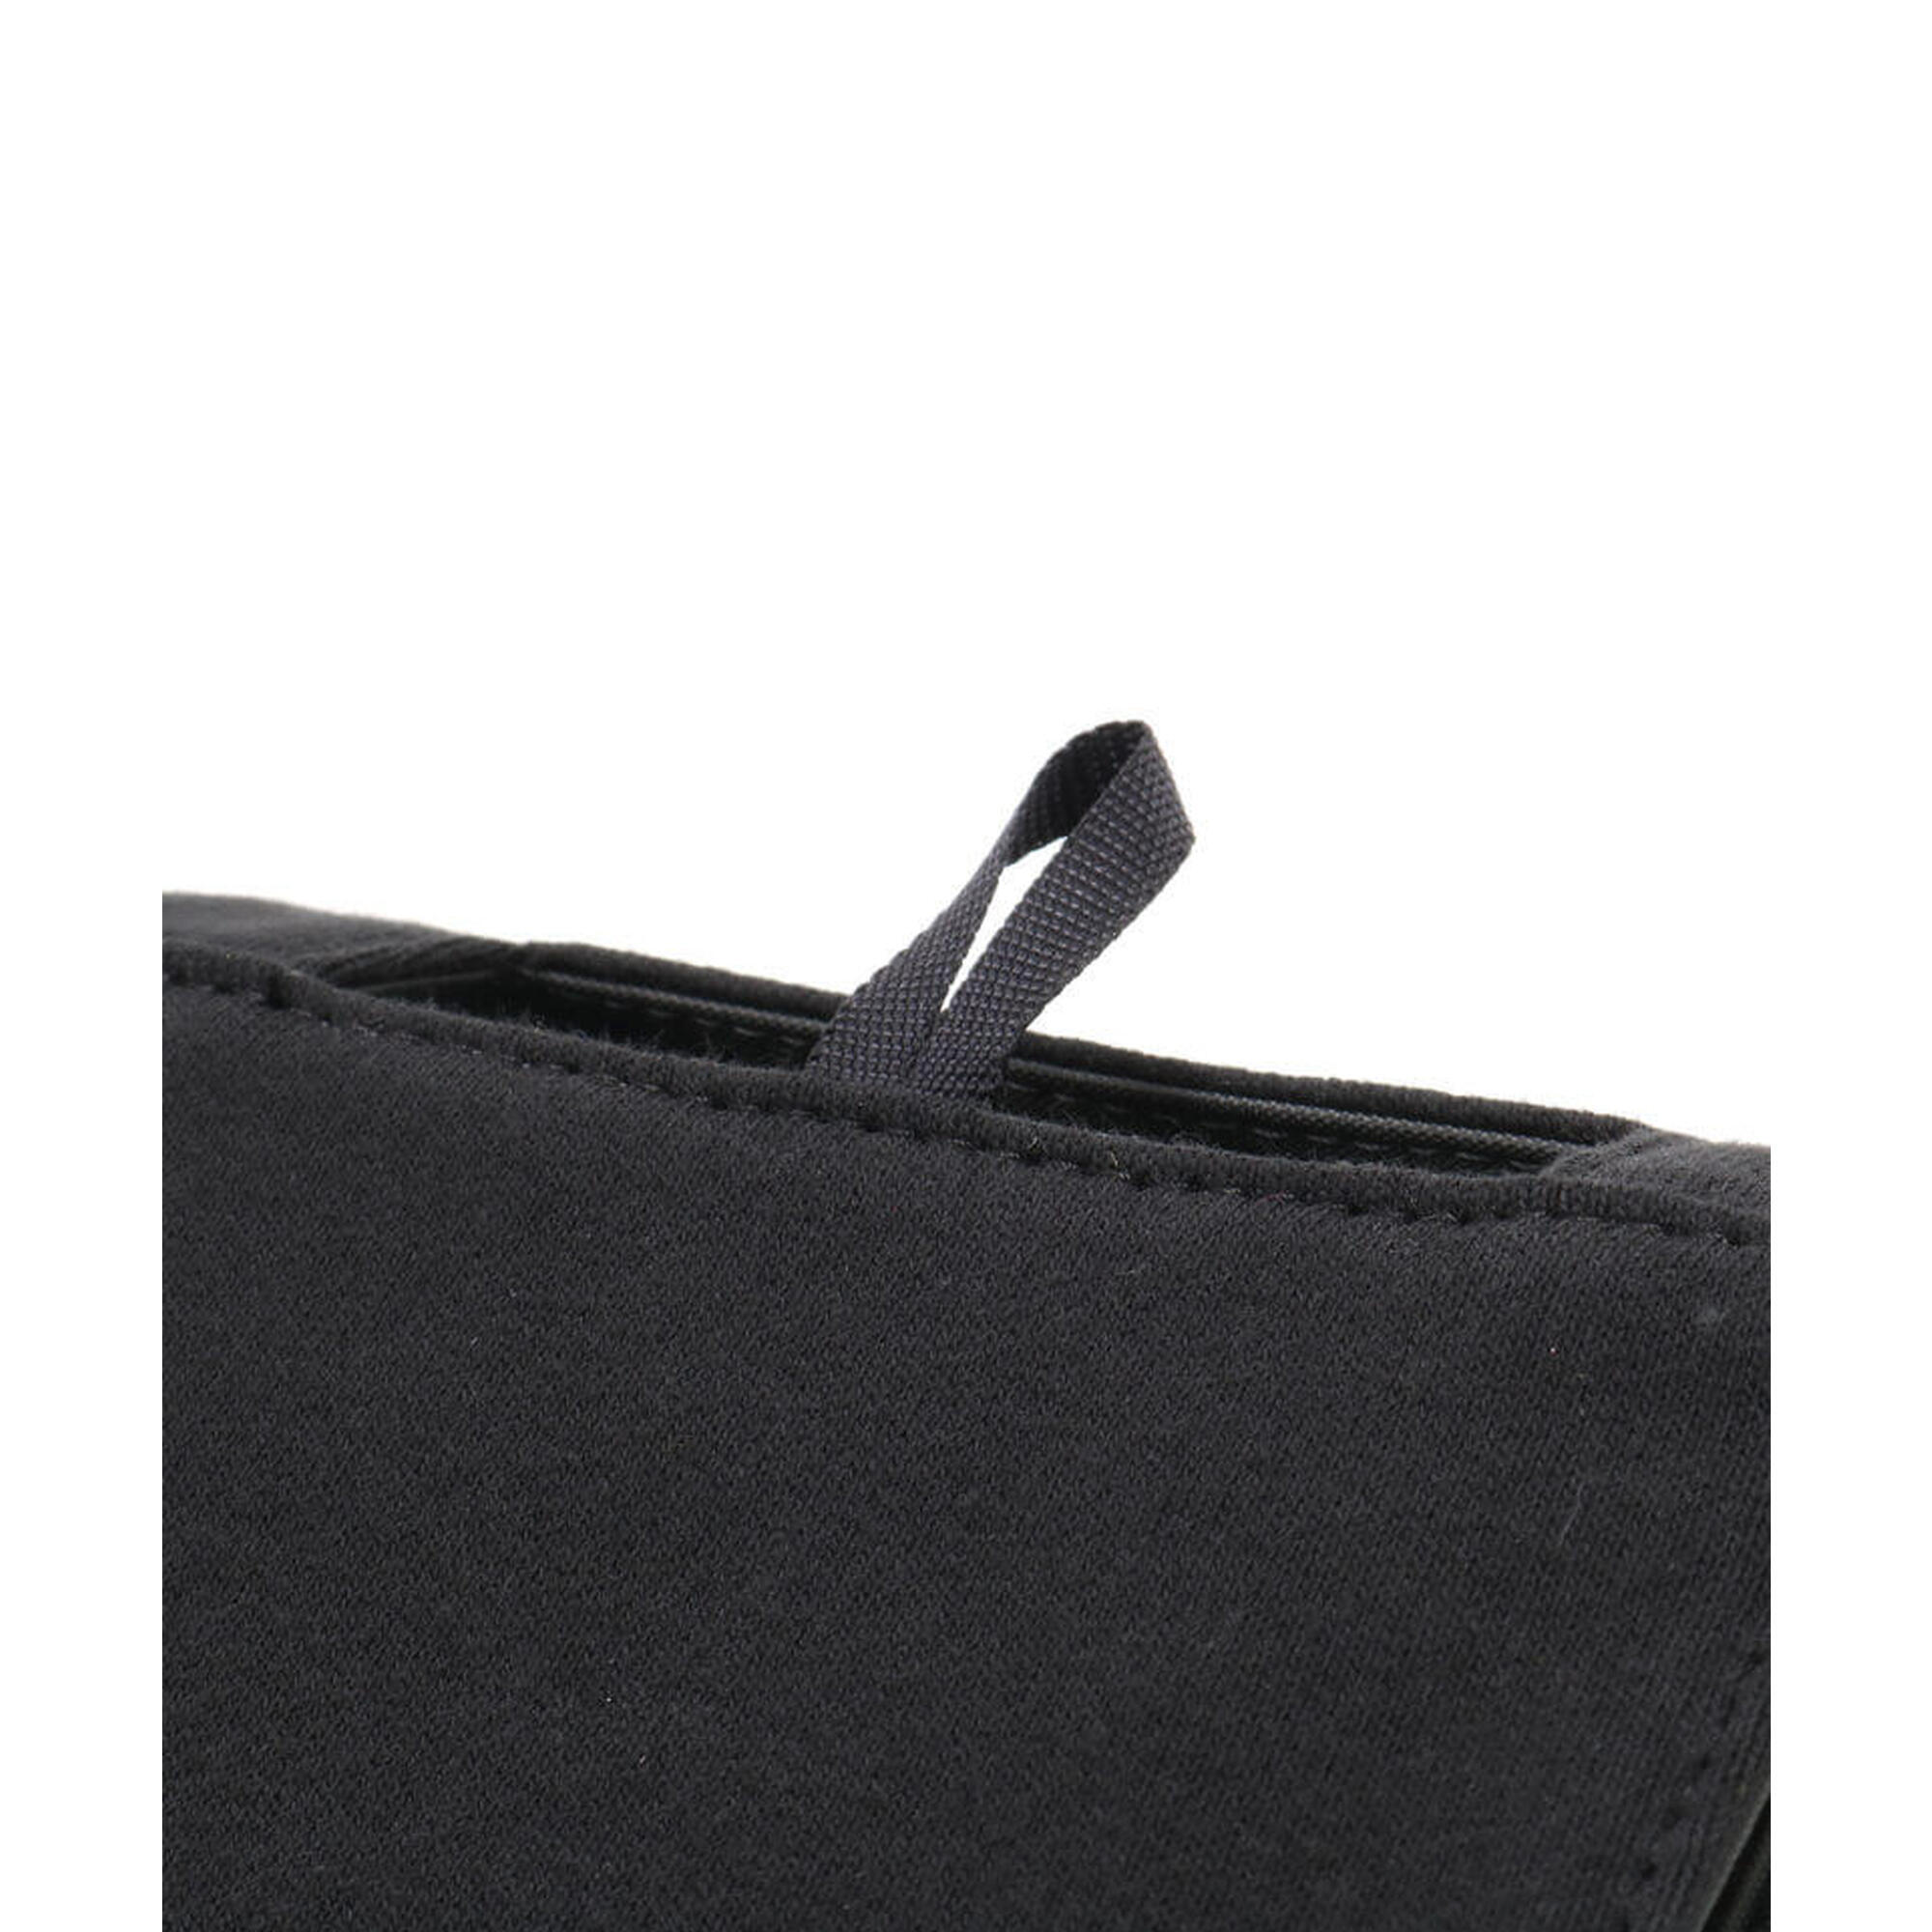 紙巾盒收納袋 - 黑色